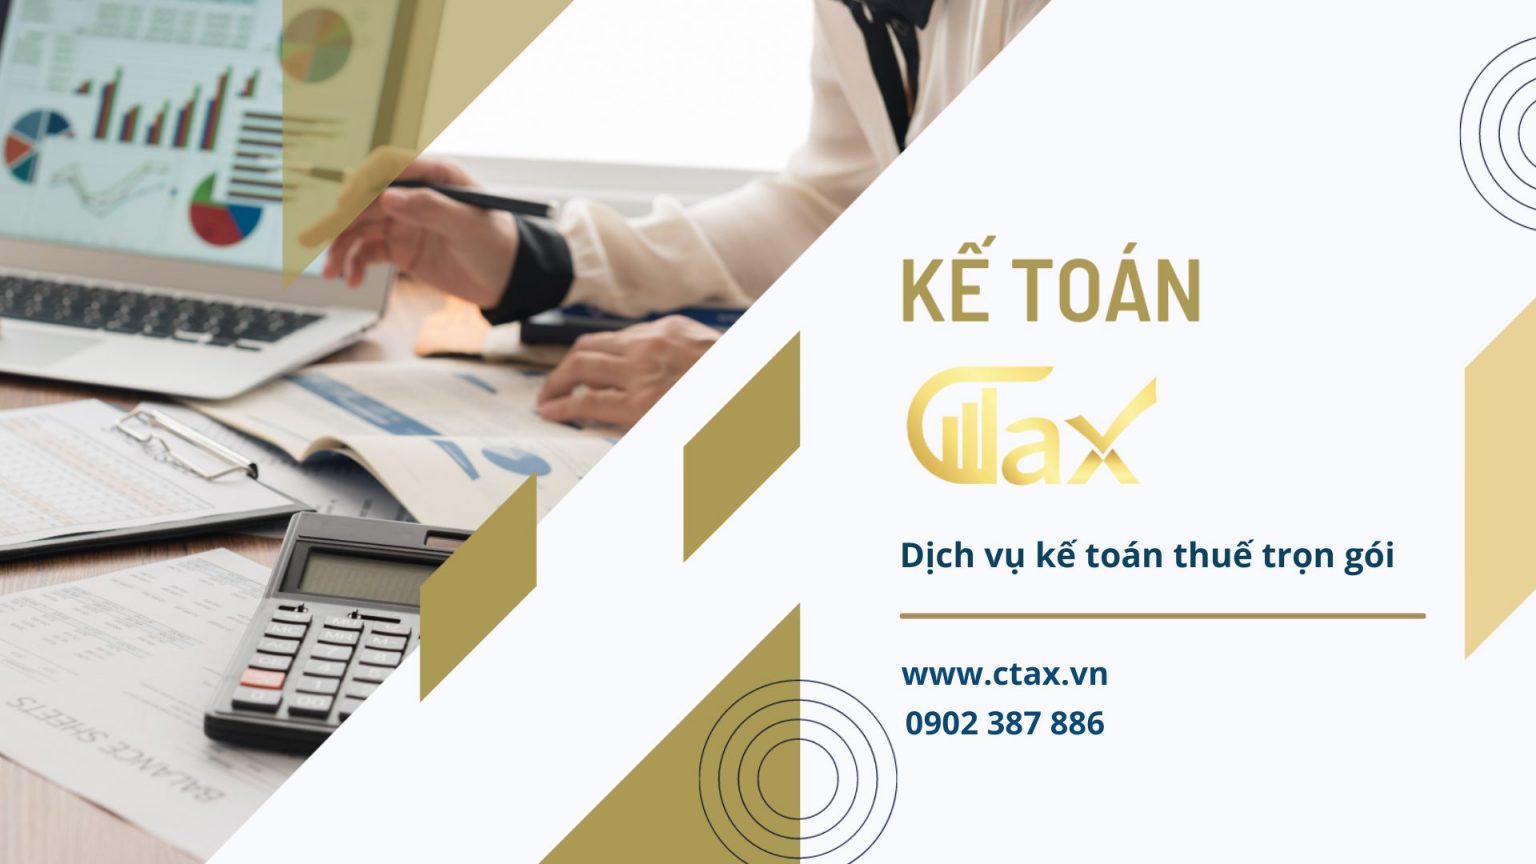 Dịch vụ kế toán trọn gói - Dịch Vụ Kế Toán Thuế Ctax Việt Nam - Công Ty TNHH Tư Vấn & Đại Lý Thuế Ctax